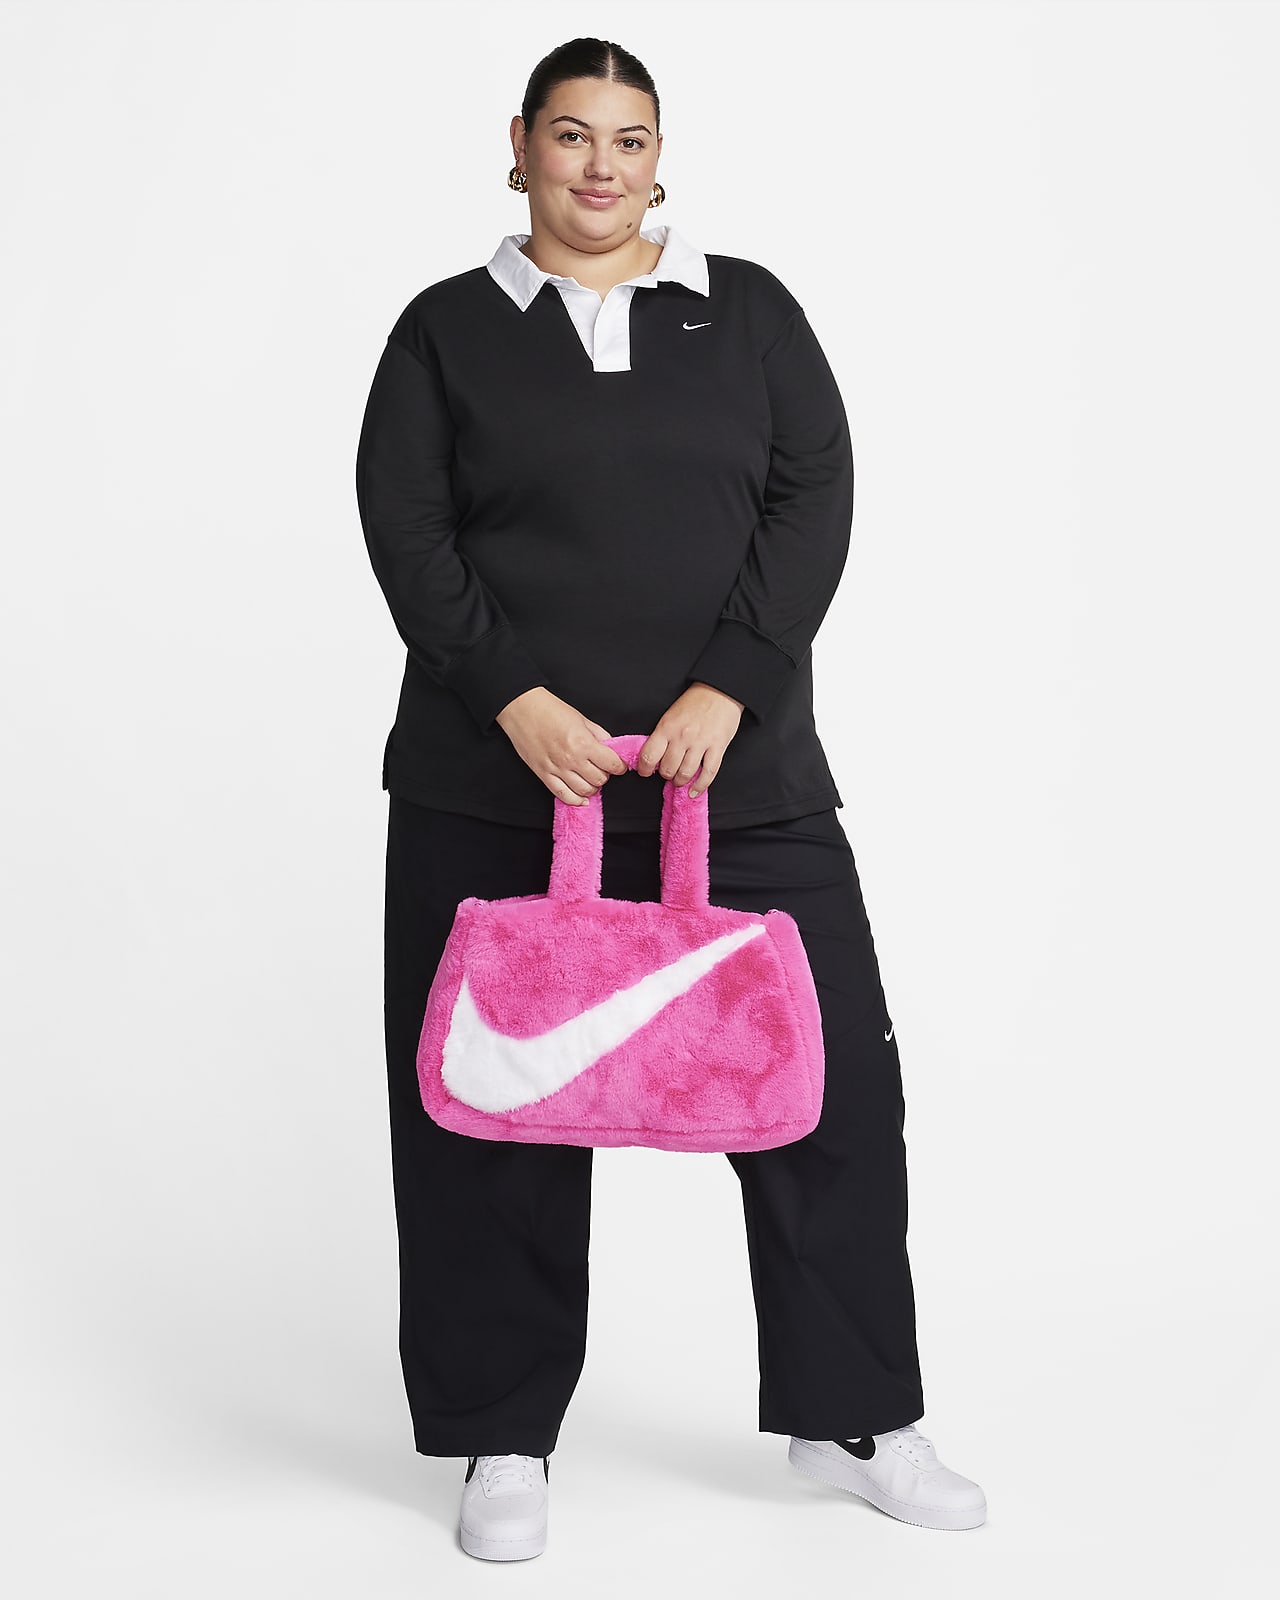 Womens Nike Pro Plus Size Clothing.